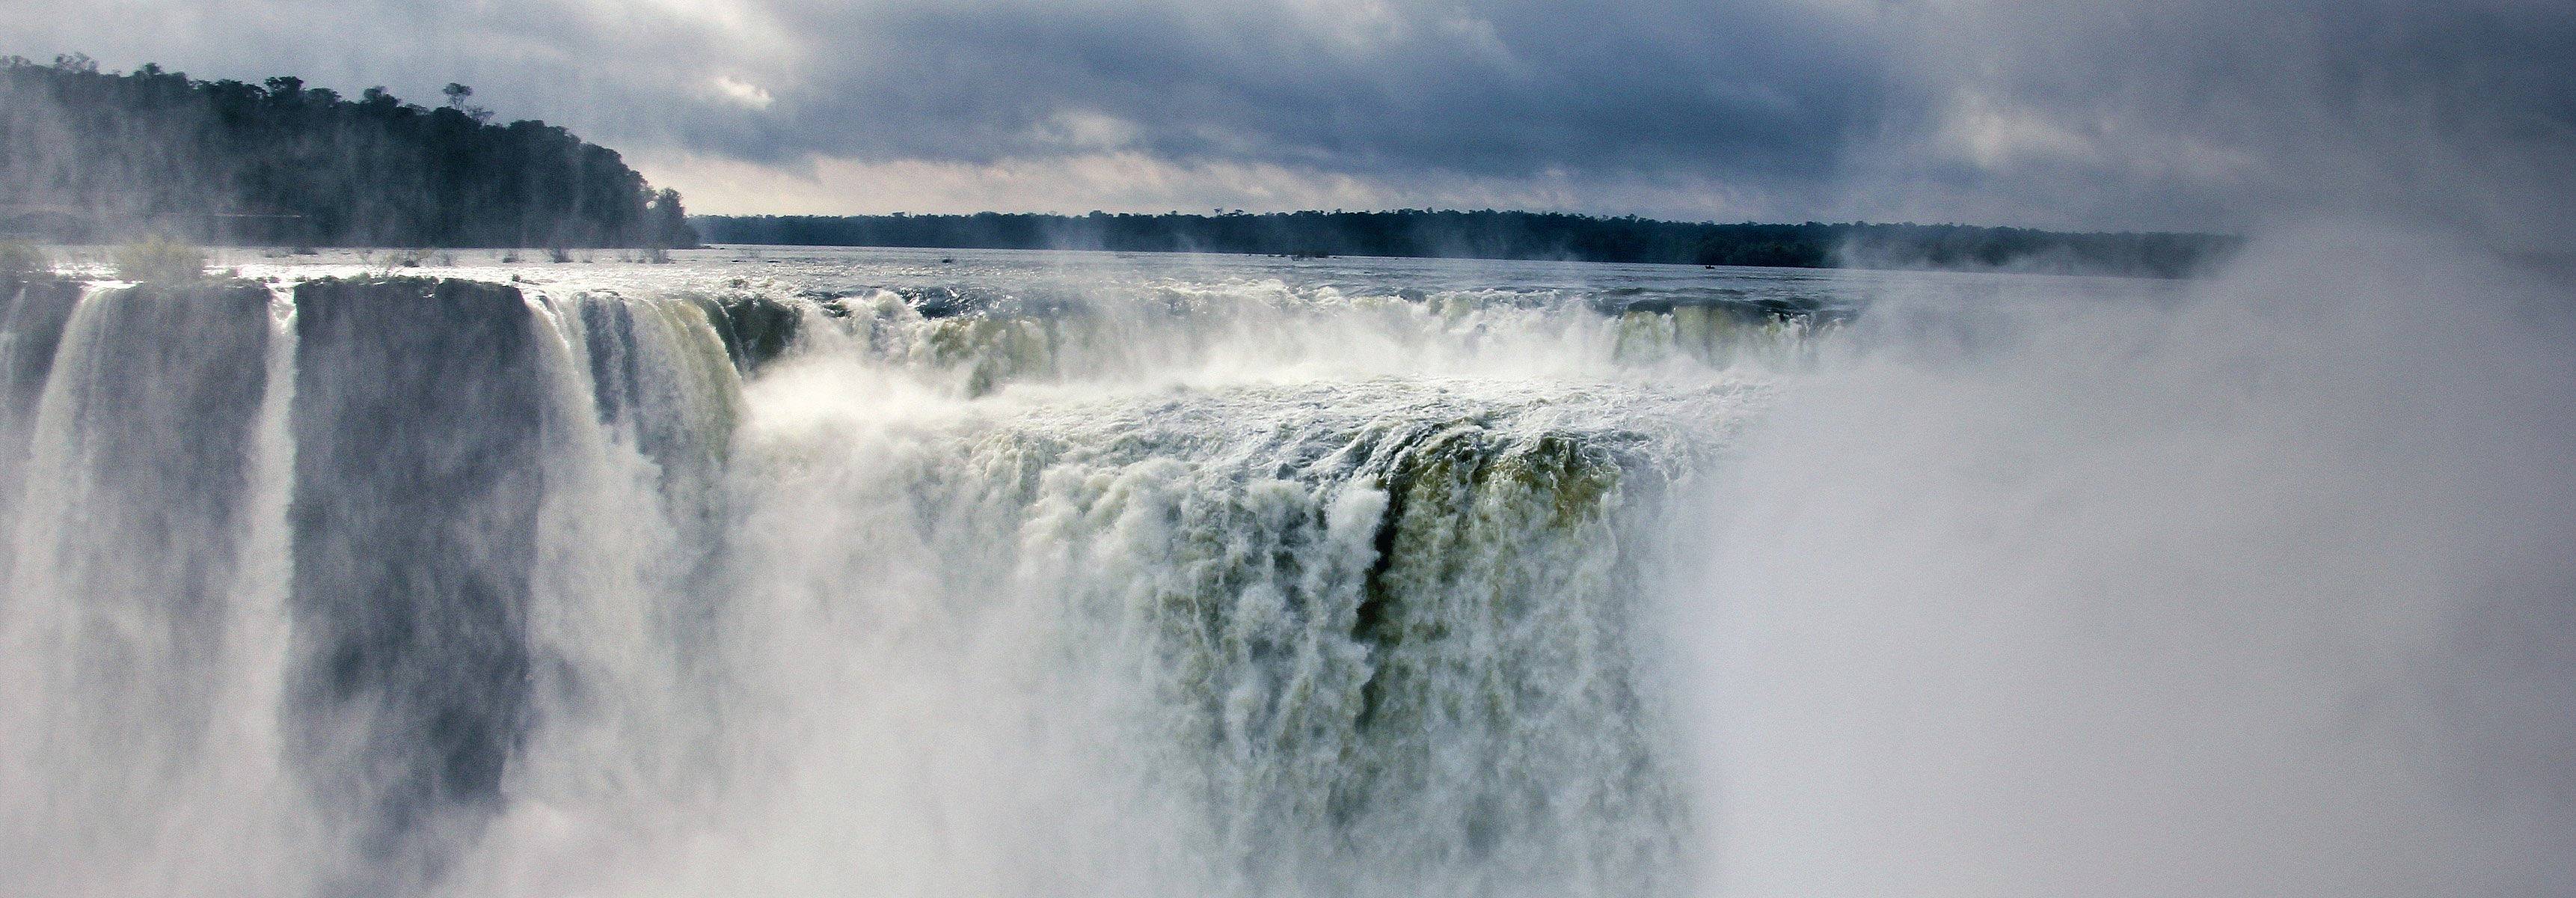 Iguassu Falls ist die größte Reihe von Wasserfällen auf der Erde